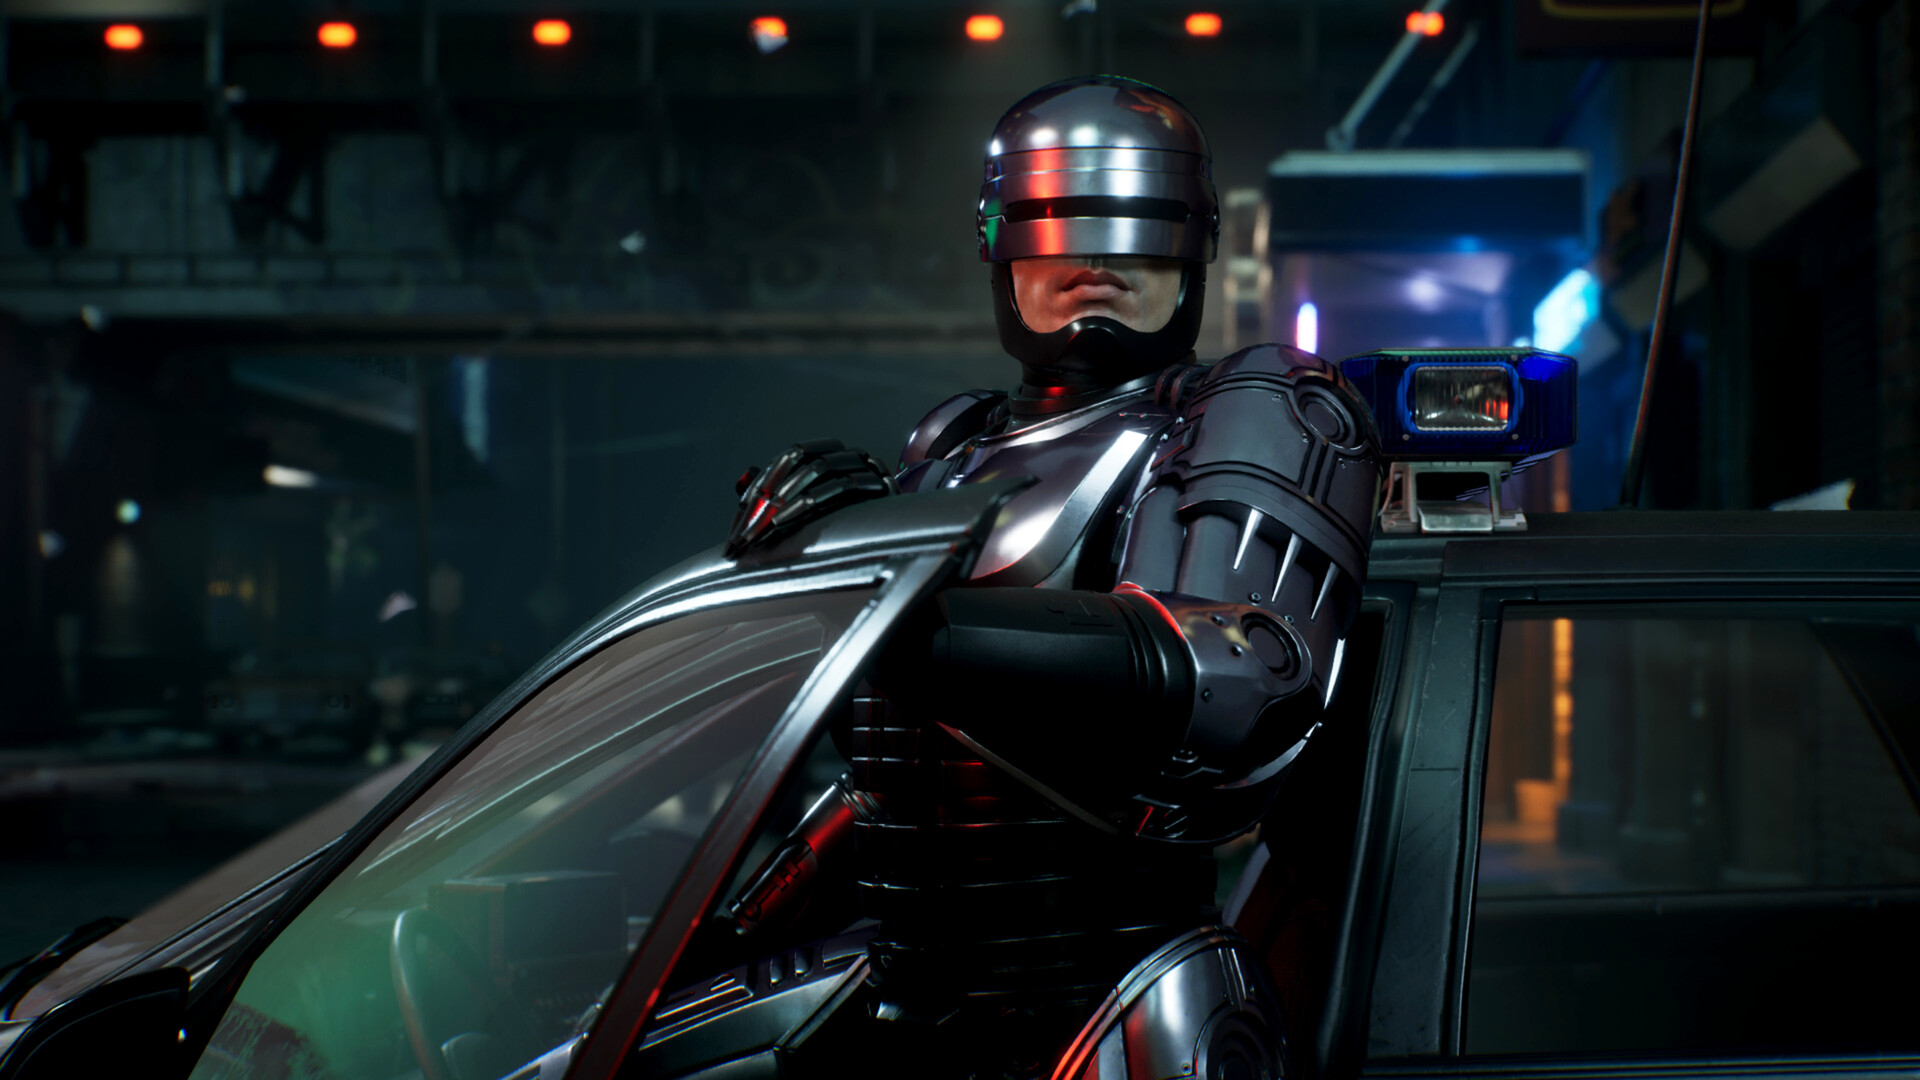 بررسی بازی RoboCop: Rogue City | پلیس آهنی تمام نشدنی